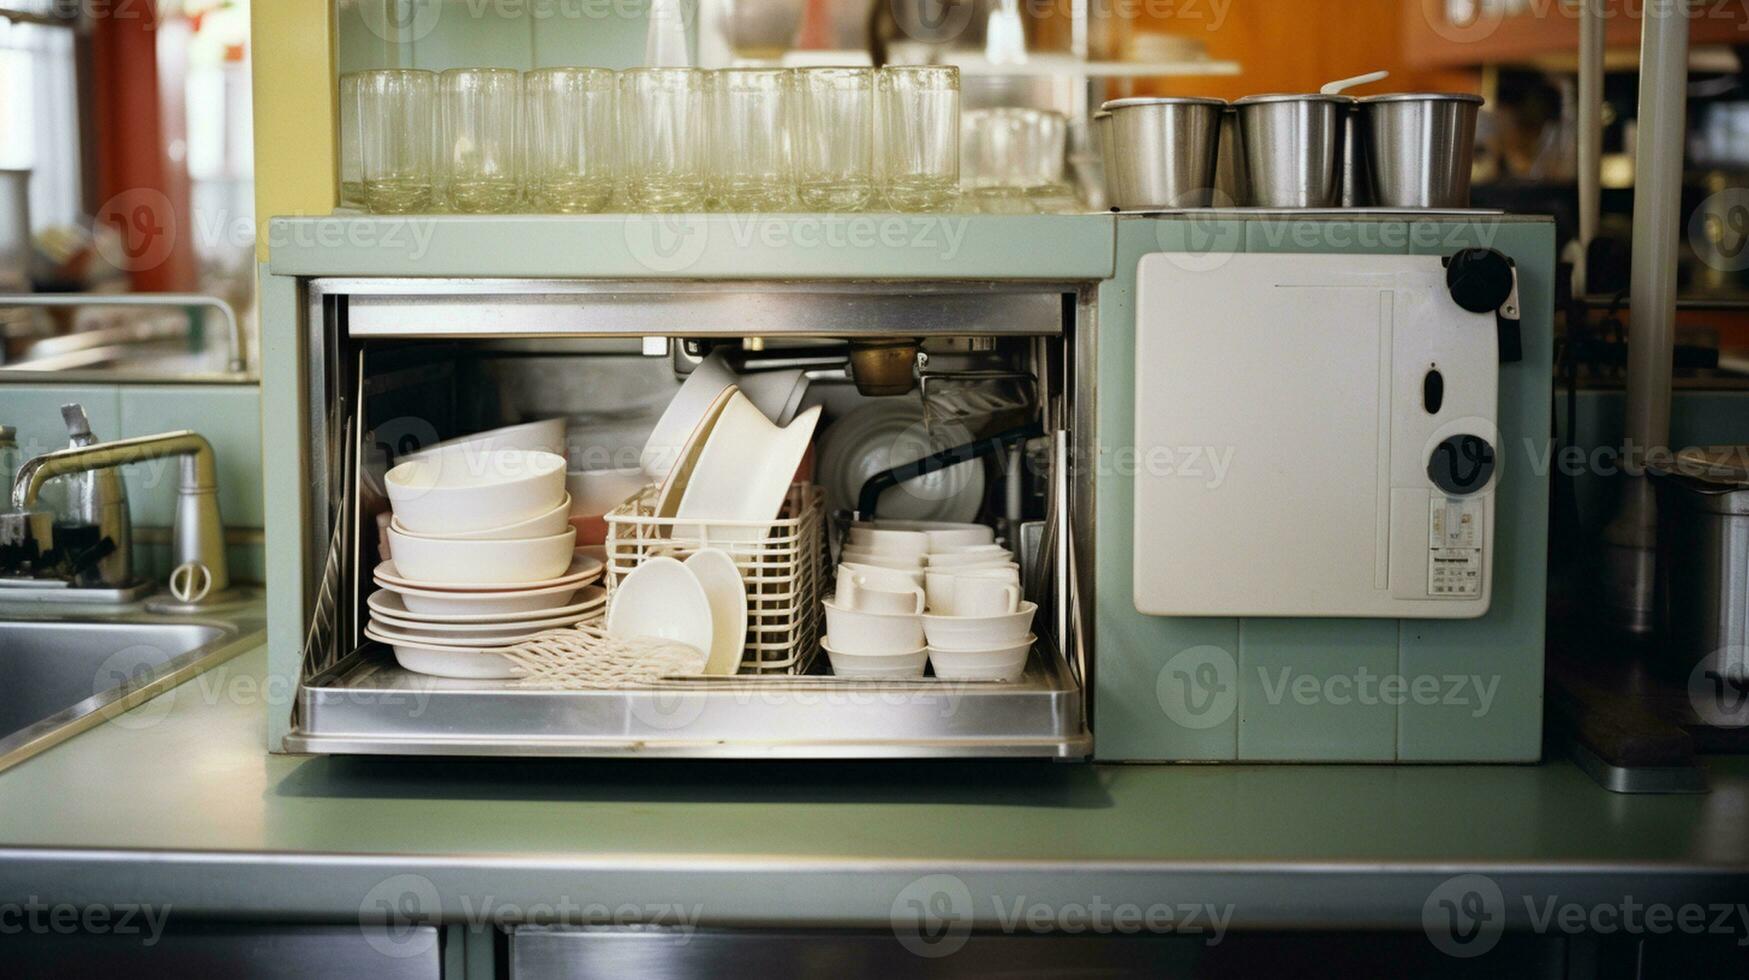 Efficacité redéfini le Lave-vaisselle dans votre cuisine photo